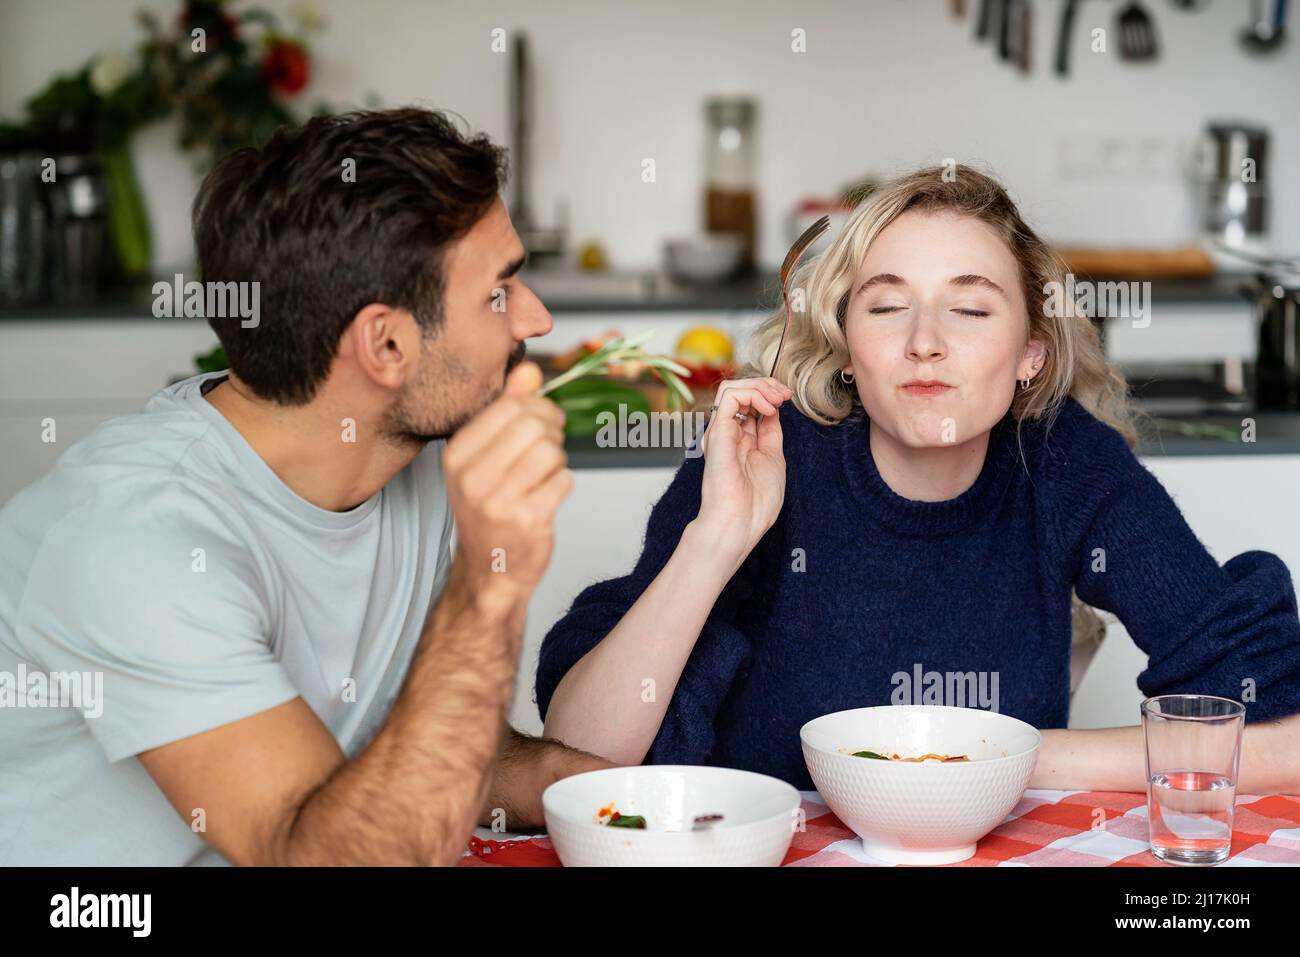 Junger Mann, der die Freundin beim Essen ansah, mit geschlossenen Augen am Tisch sitzend Stockfoto